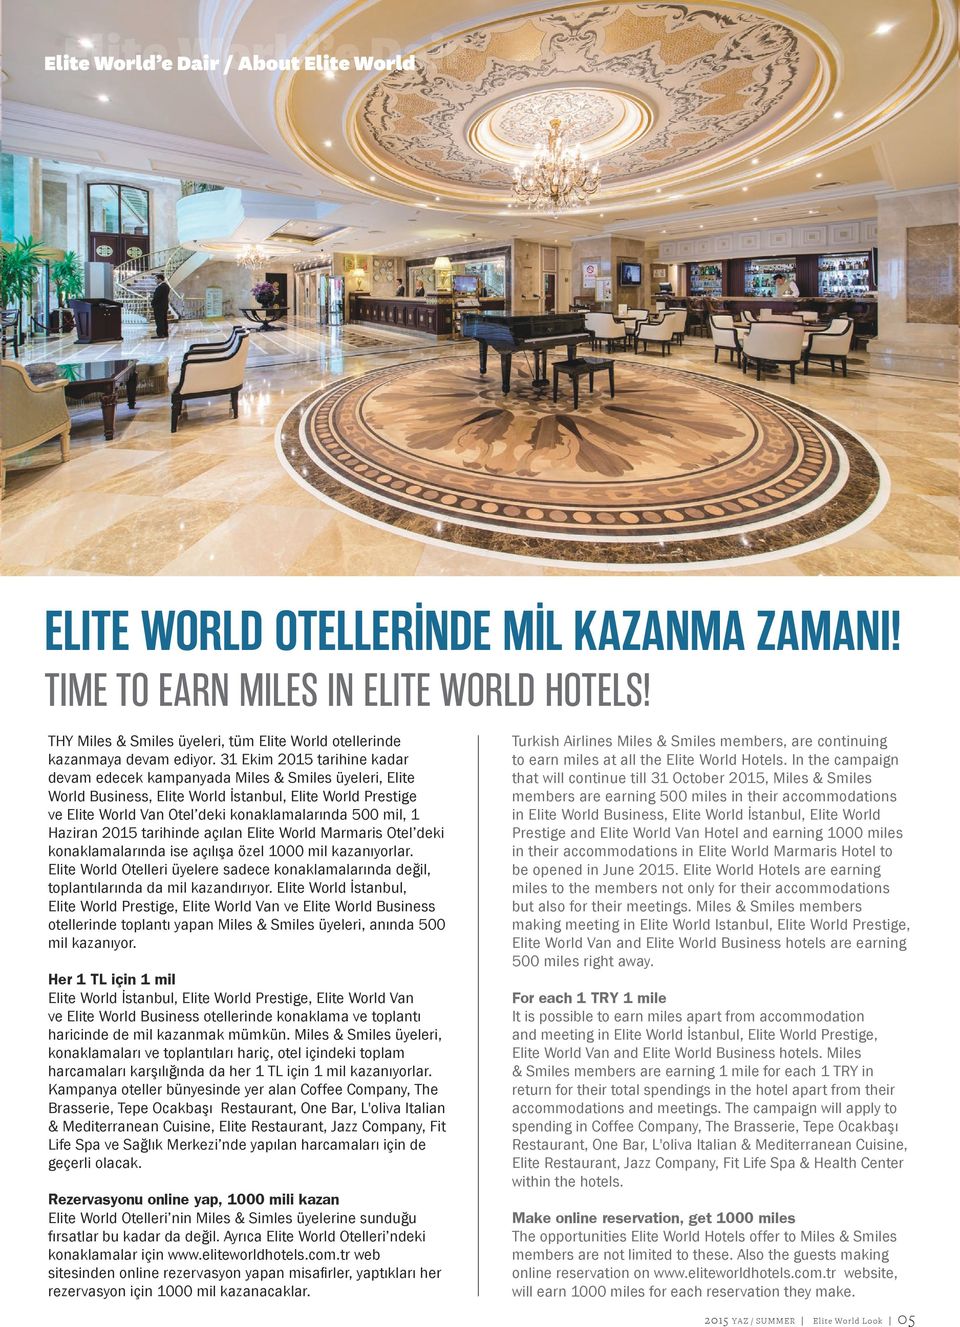 31 Ekim 2015 tarihine kadar devam edecek kampanyada Miles & Smiles üyeleri, Elite World Business, Elite World İstanbul, Elite World Prestige ve Elite World Van Otel deki konaklamalarında 500 mil, 1